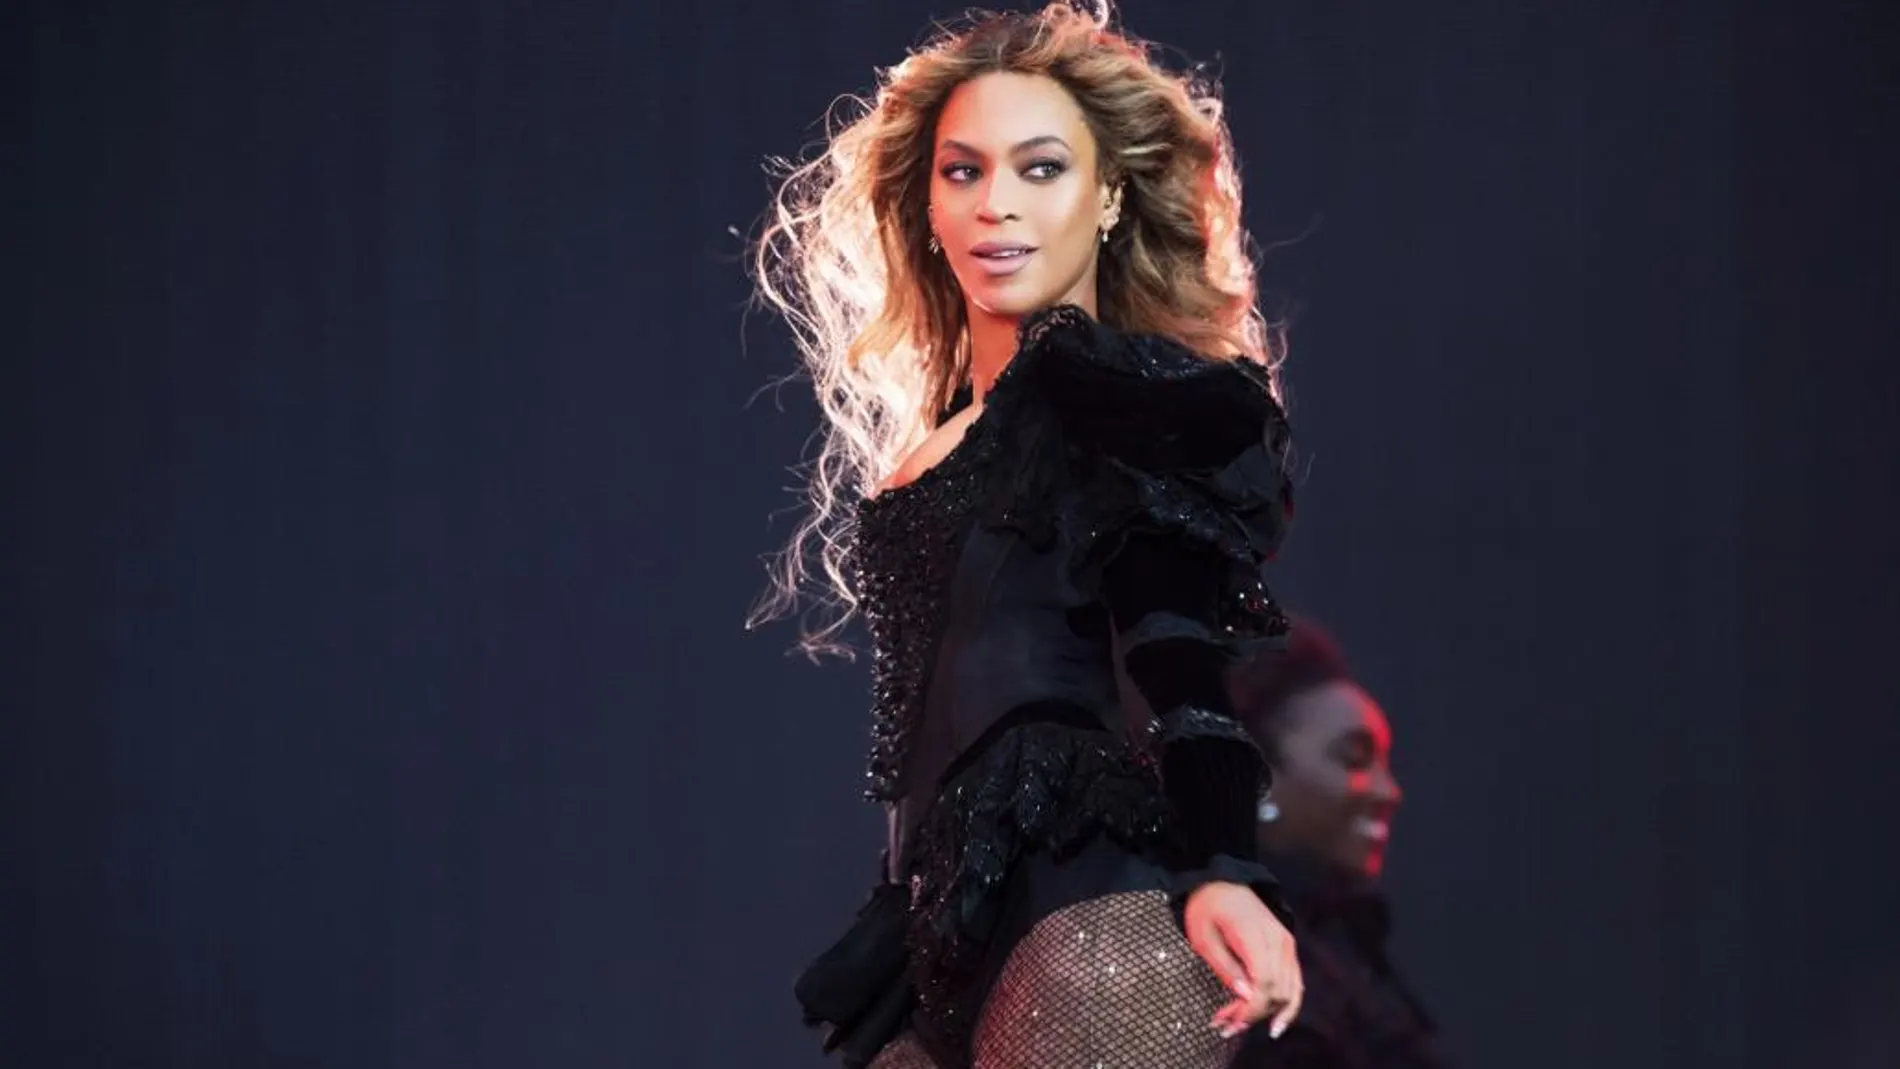 Beyoncé es la artista afroamericana más influyente y poderosa del momento, pero ¿es todo oro, éxito y glamour lo que reluce?